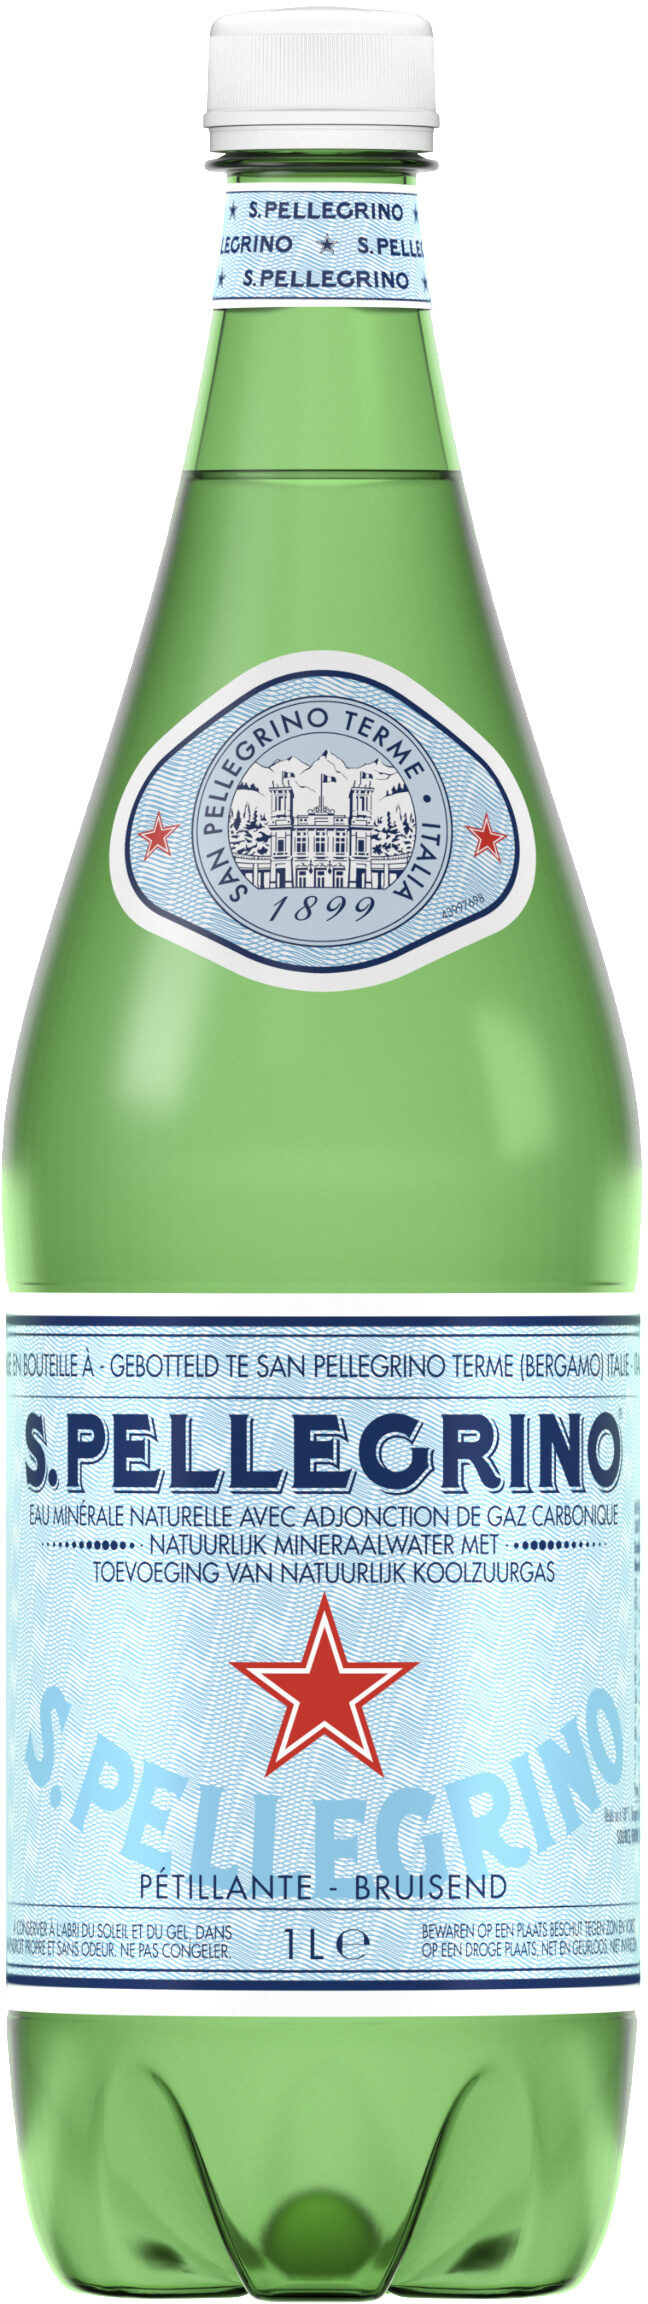 S. Pellegrino Water - Prodotto - en